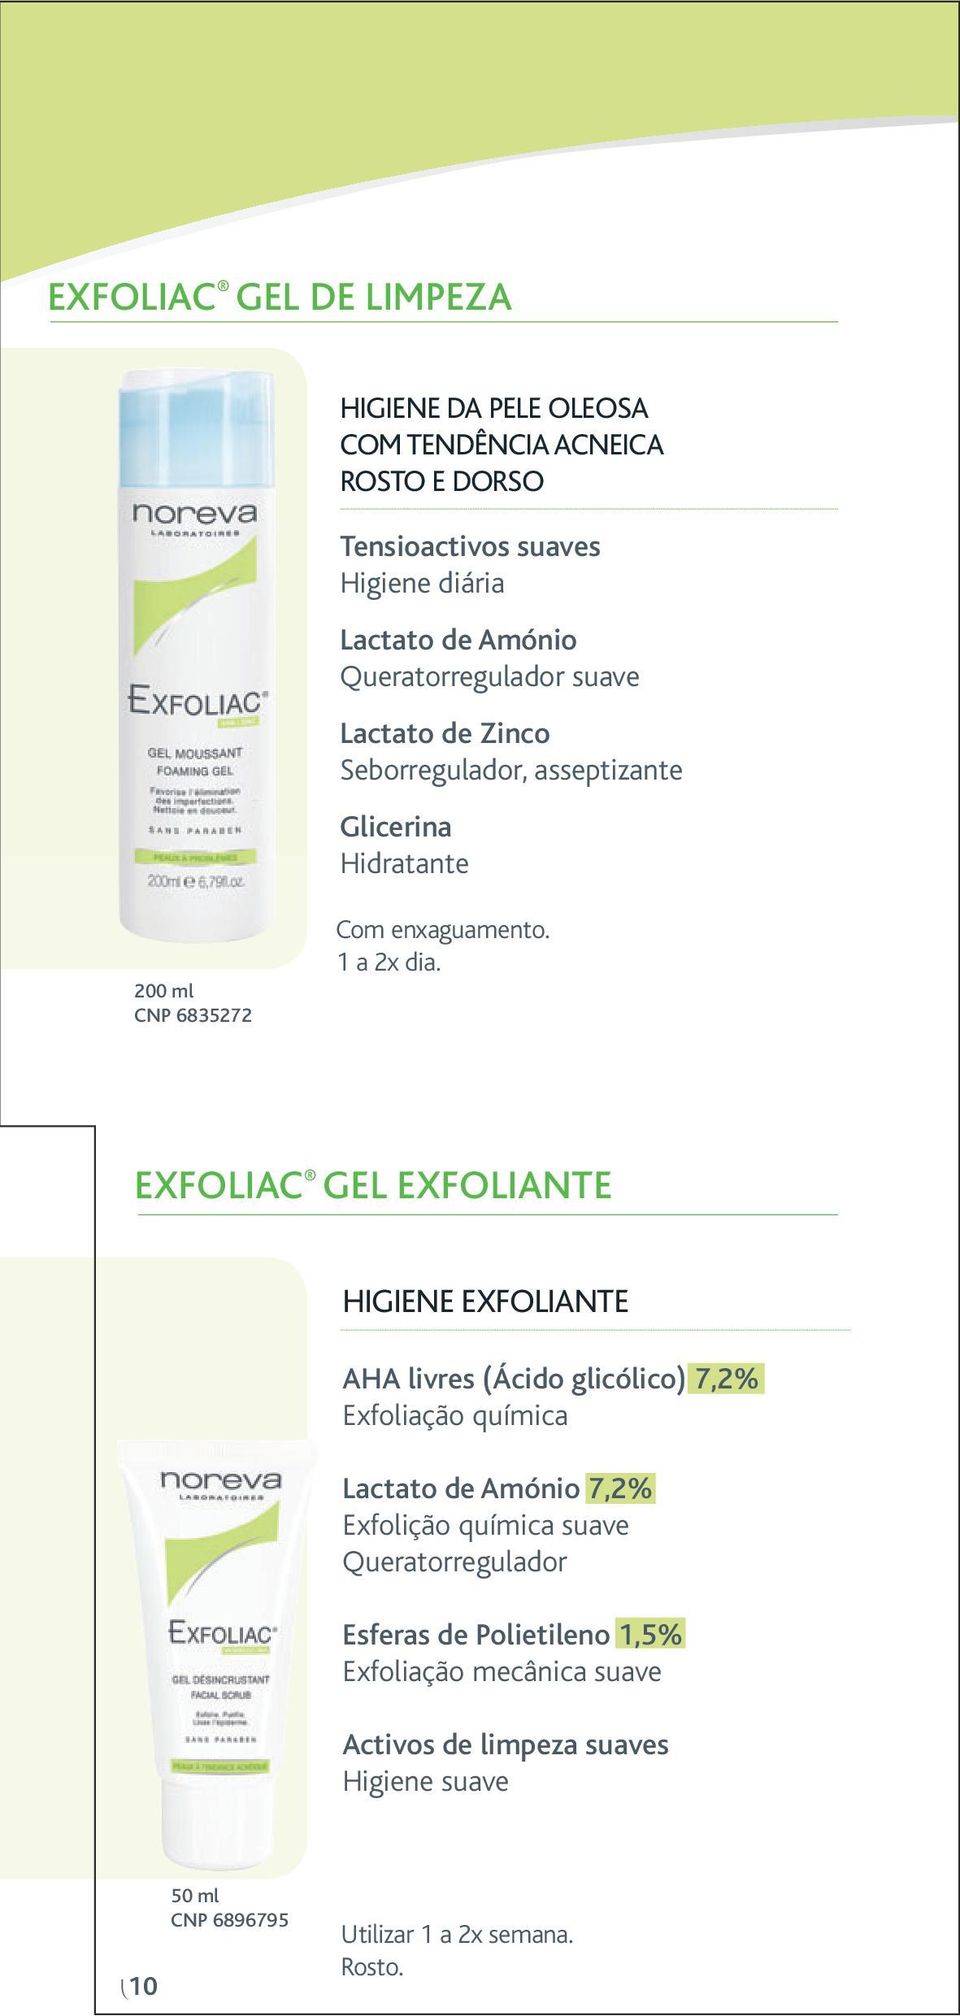 EXFOLIAC GEL EXFOLIANTE HIGIENE EXFOLIANTE AHA livres (Ácido glicólico) 7,2% Exfoliação química Lactato de Amónio 7,2% Exfolição química suave